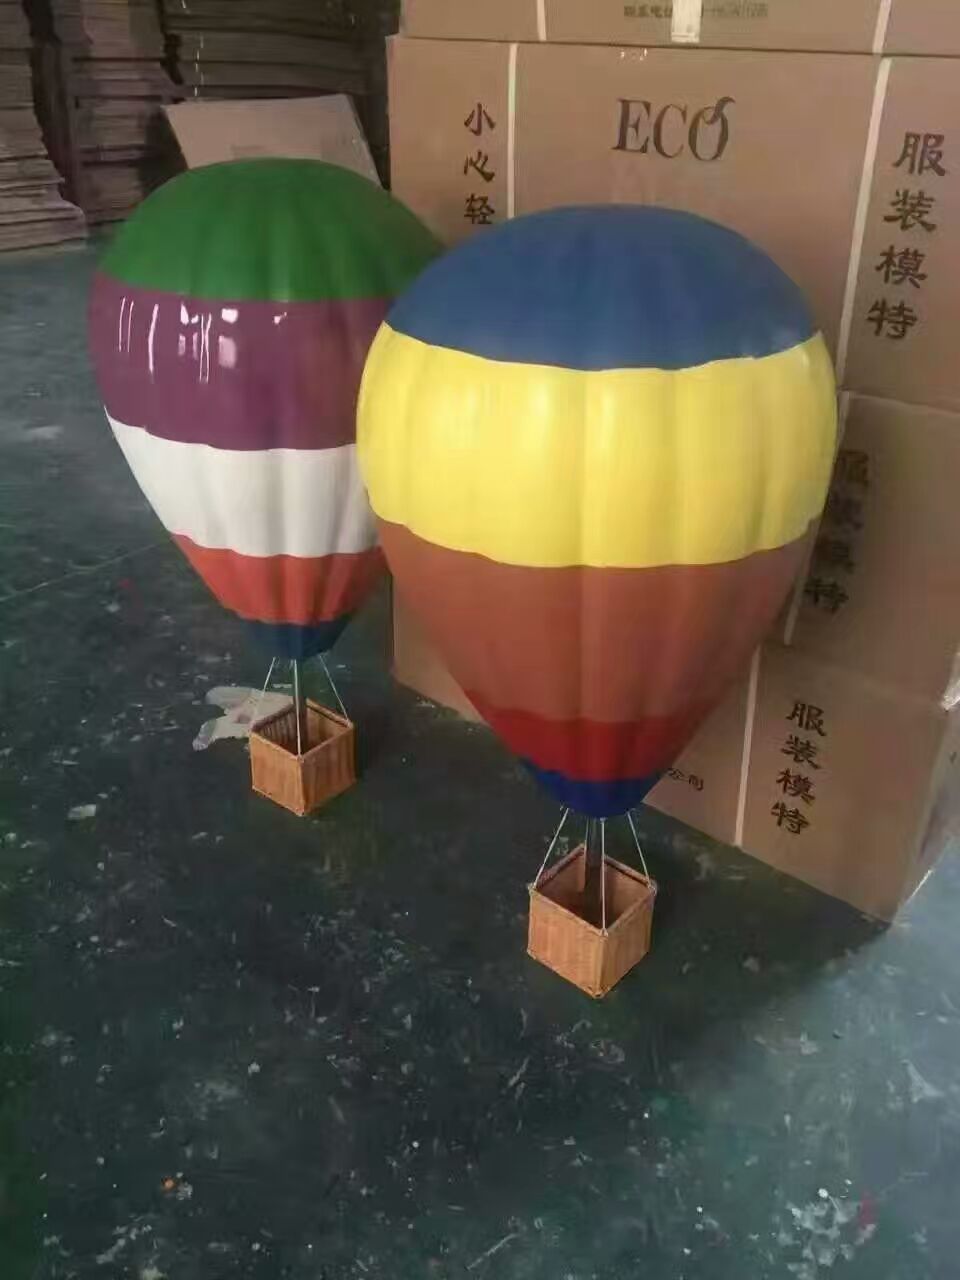 热气球制作厂家展览出售热气球 热气球制作厂家展览出售 热气球制作厂家展览出售